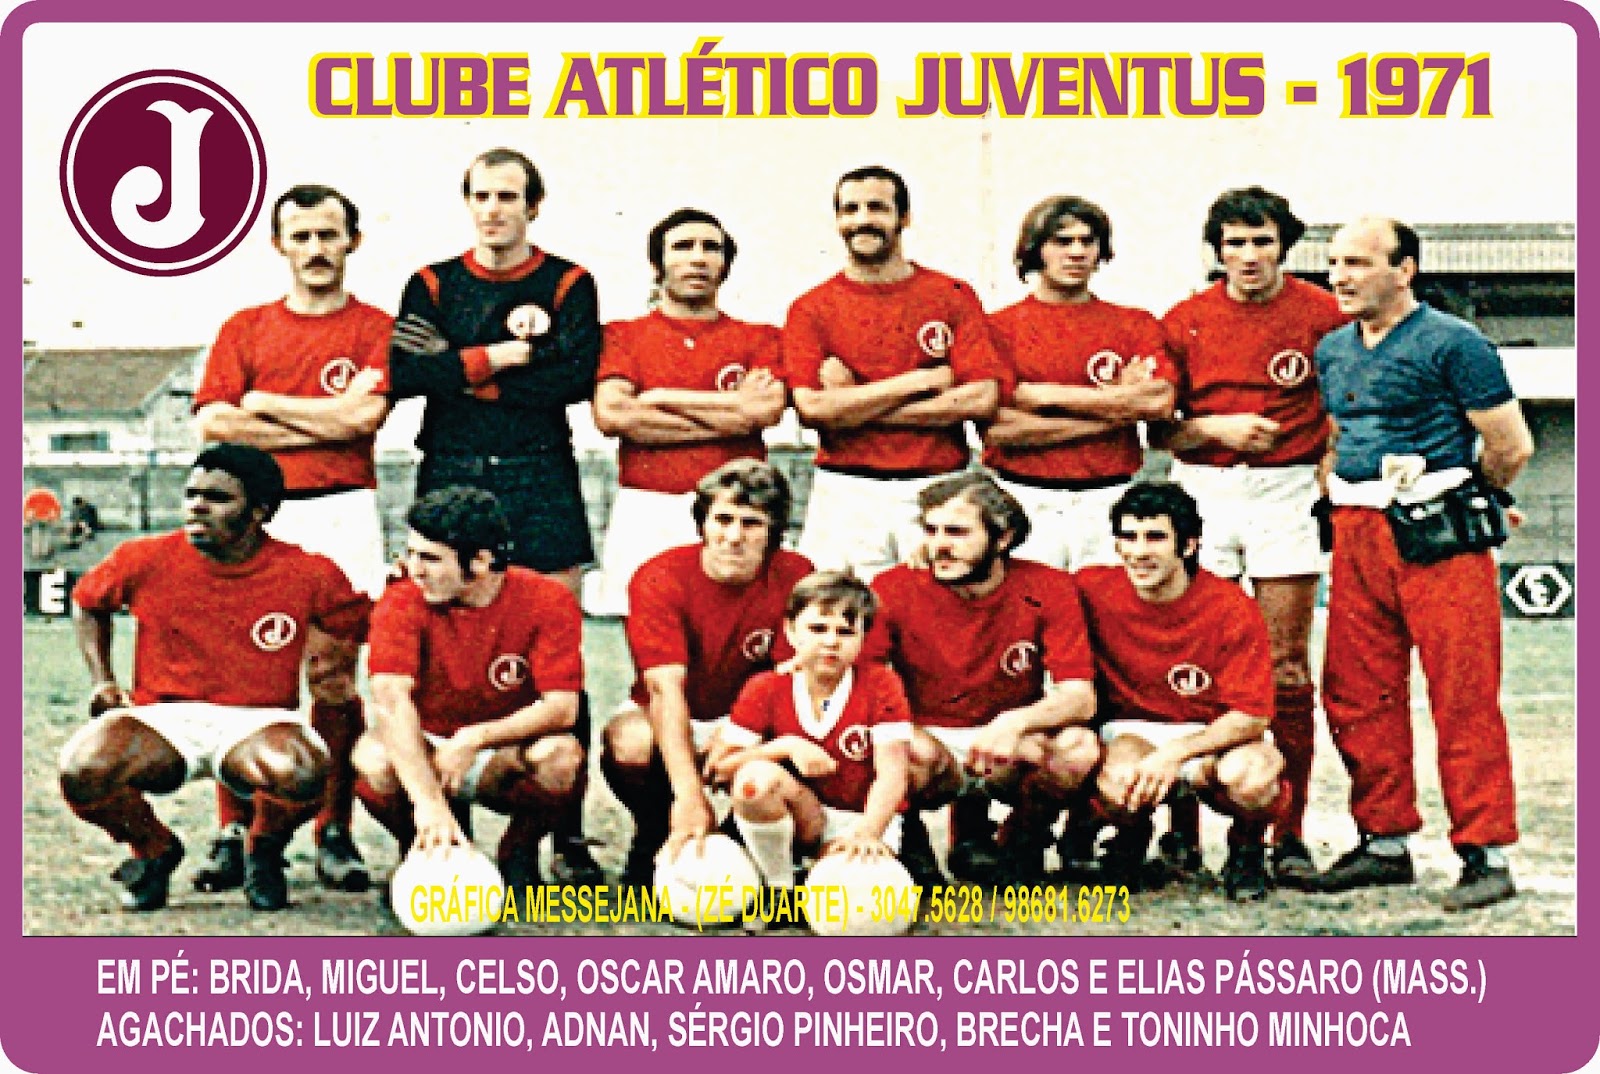 Clube Atlético JuventusArquivo de Bocha - Página 16 de 16 - Clube Atlético  Juventus